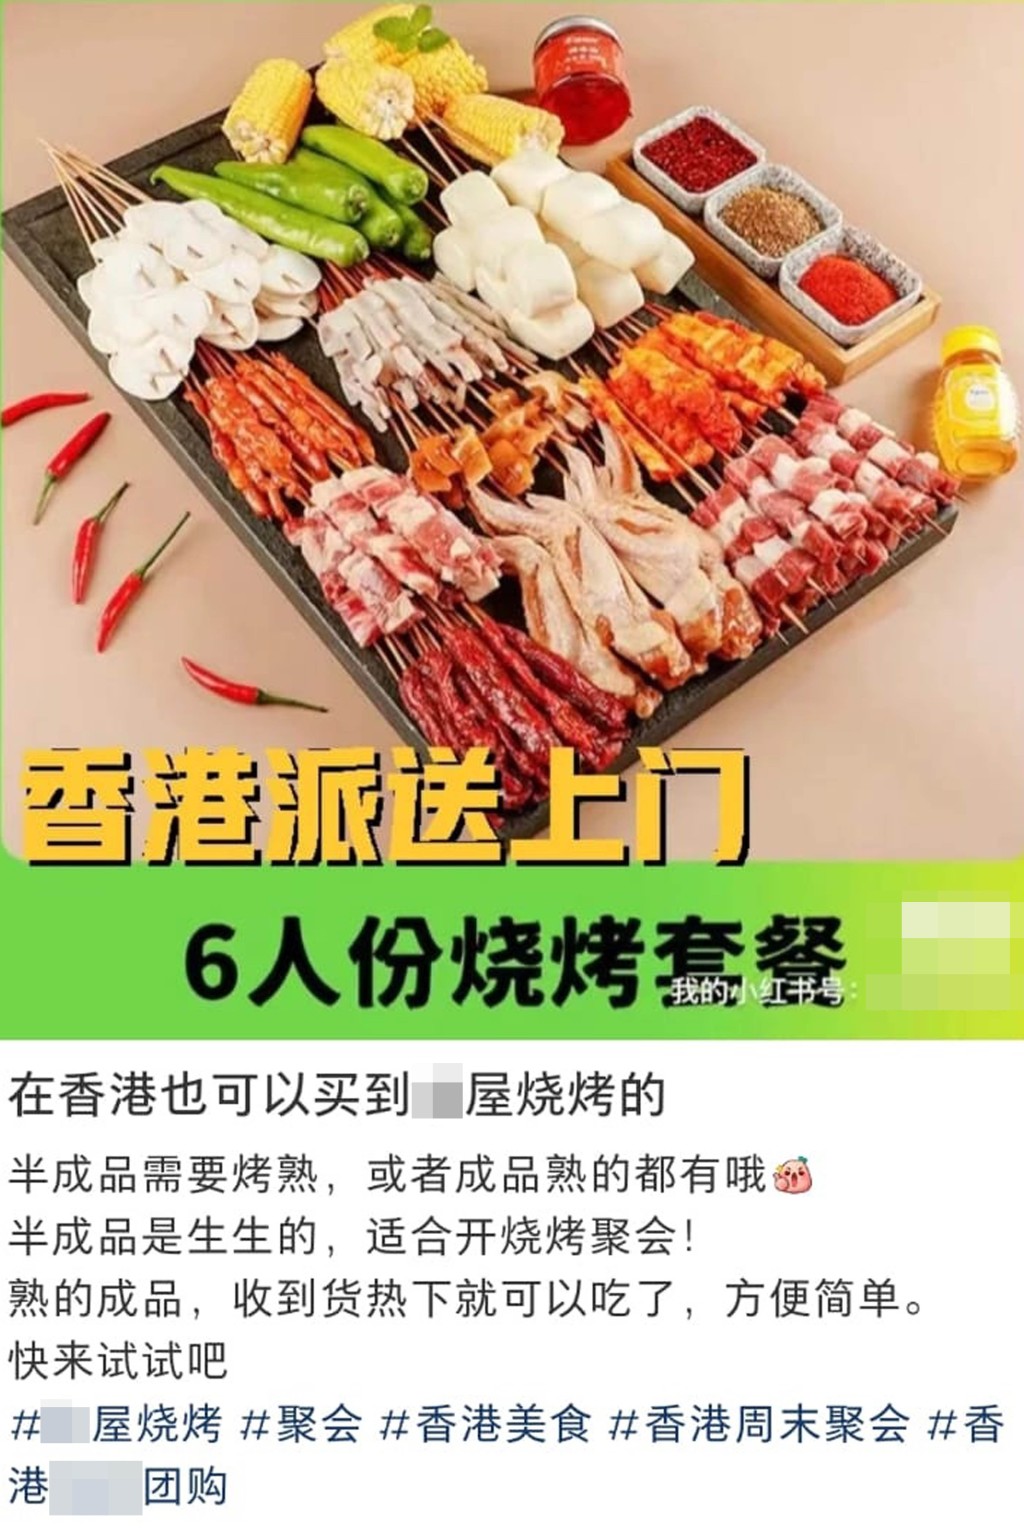 有物流公司称可在深圳代购兼运送生鲜肉类到香港客人的府上。 网上图片